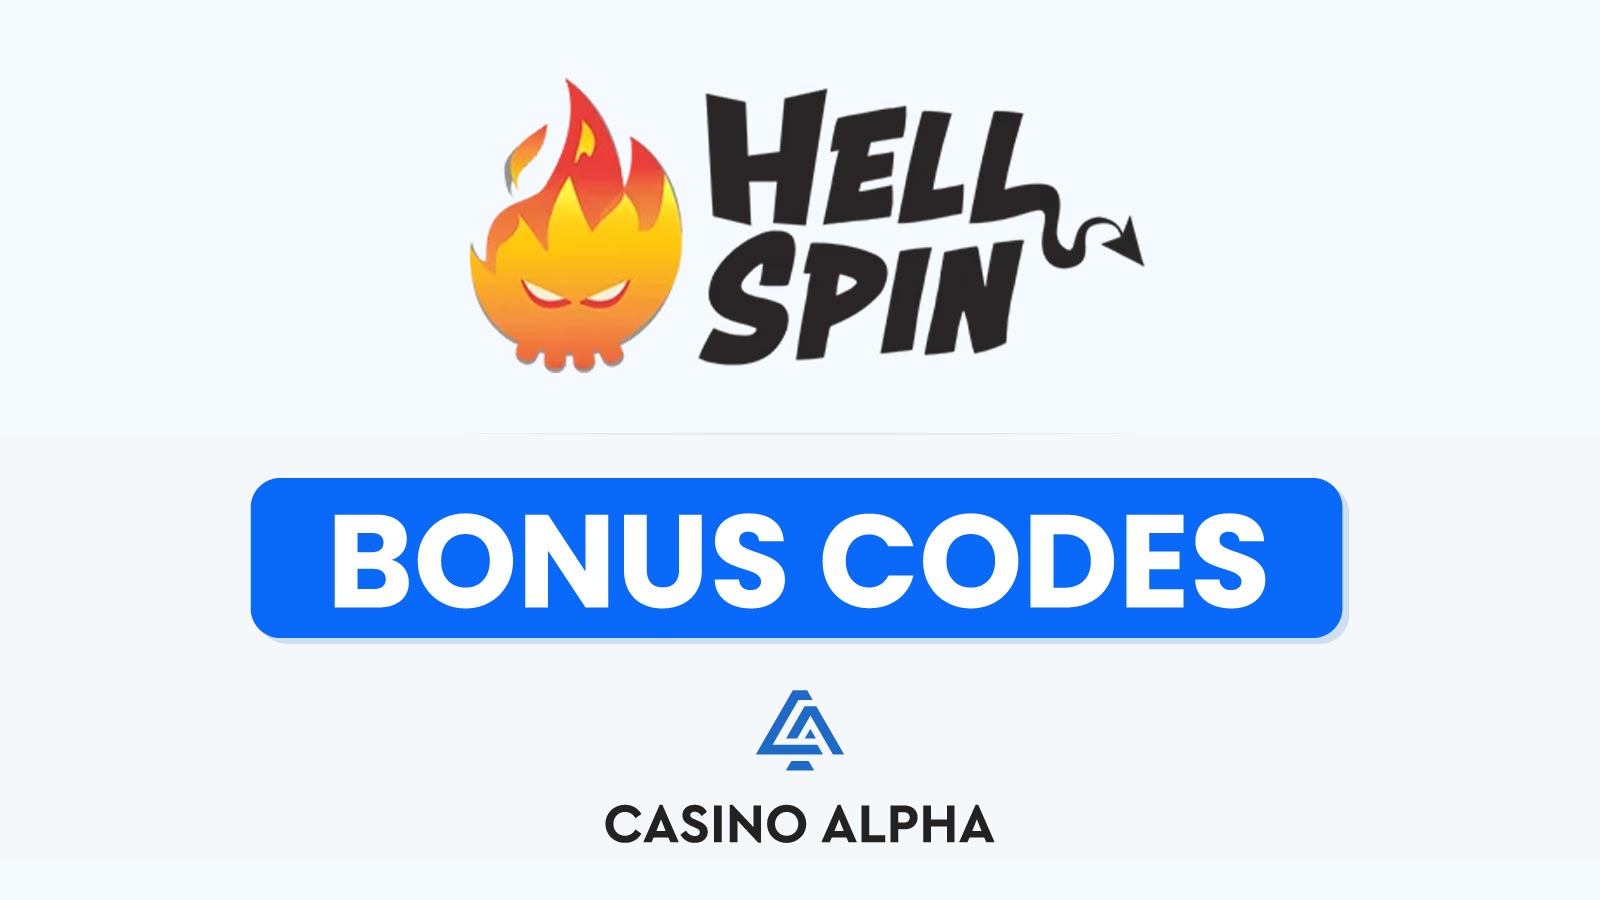 hell spin casino no deposit bonus codes